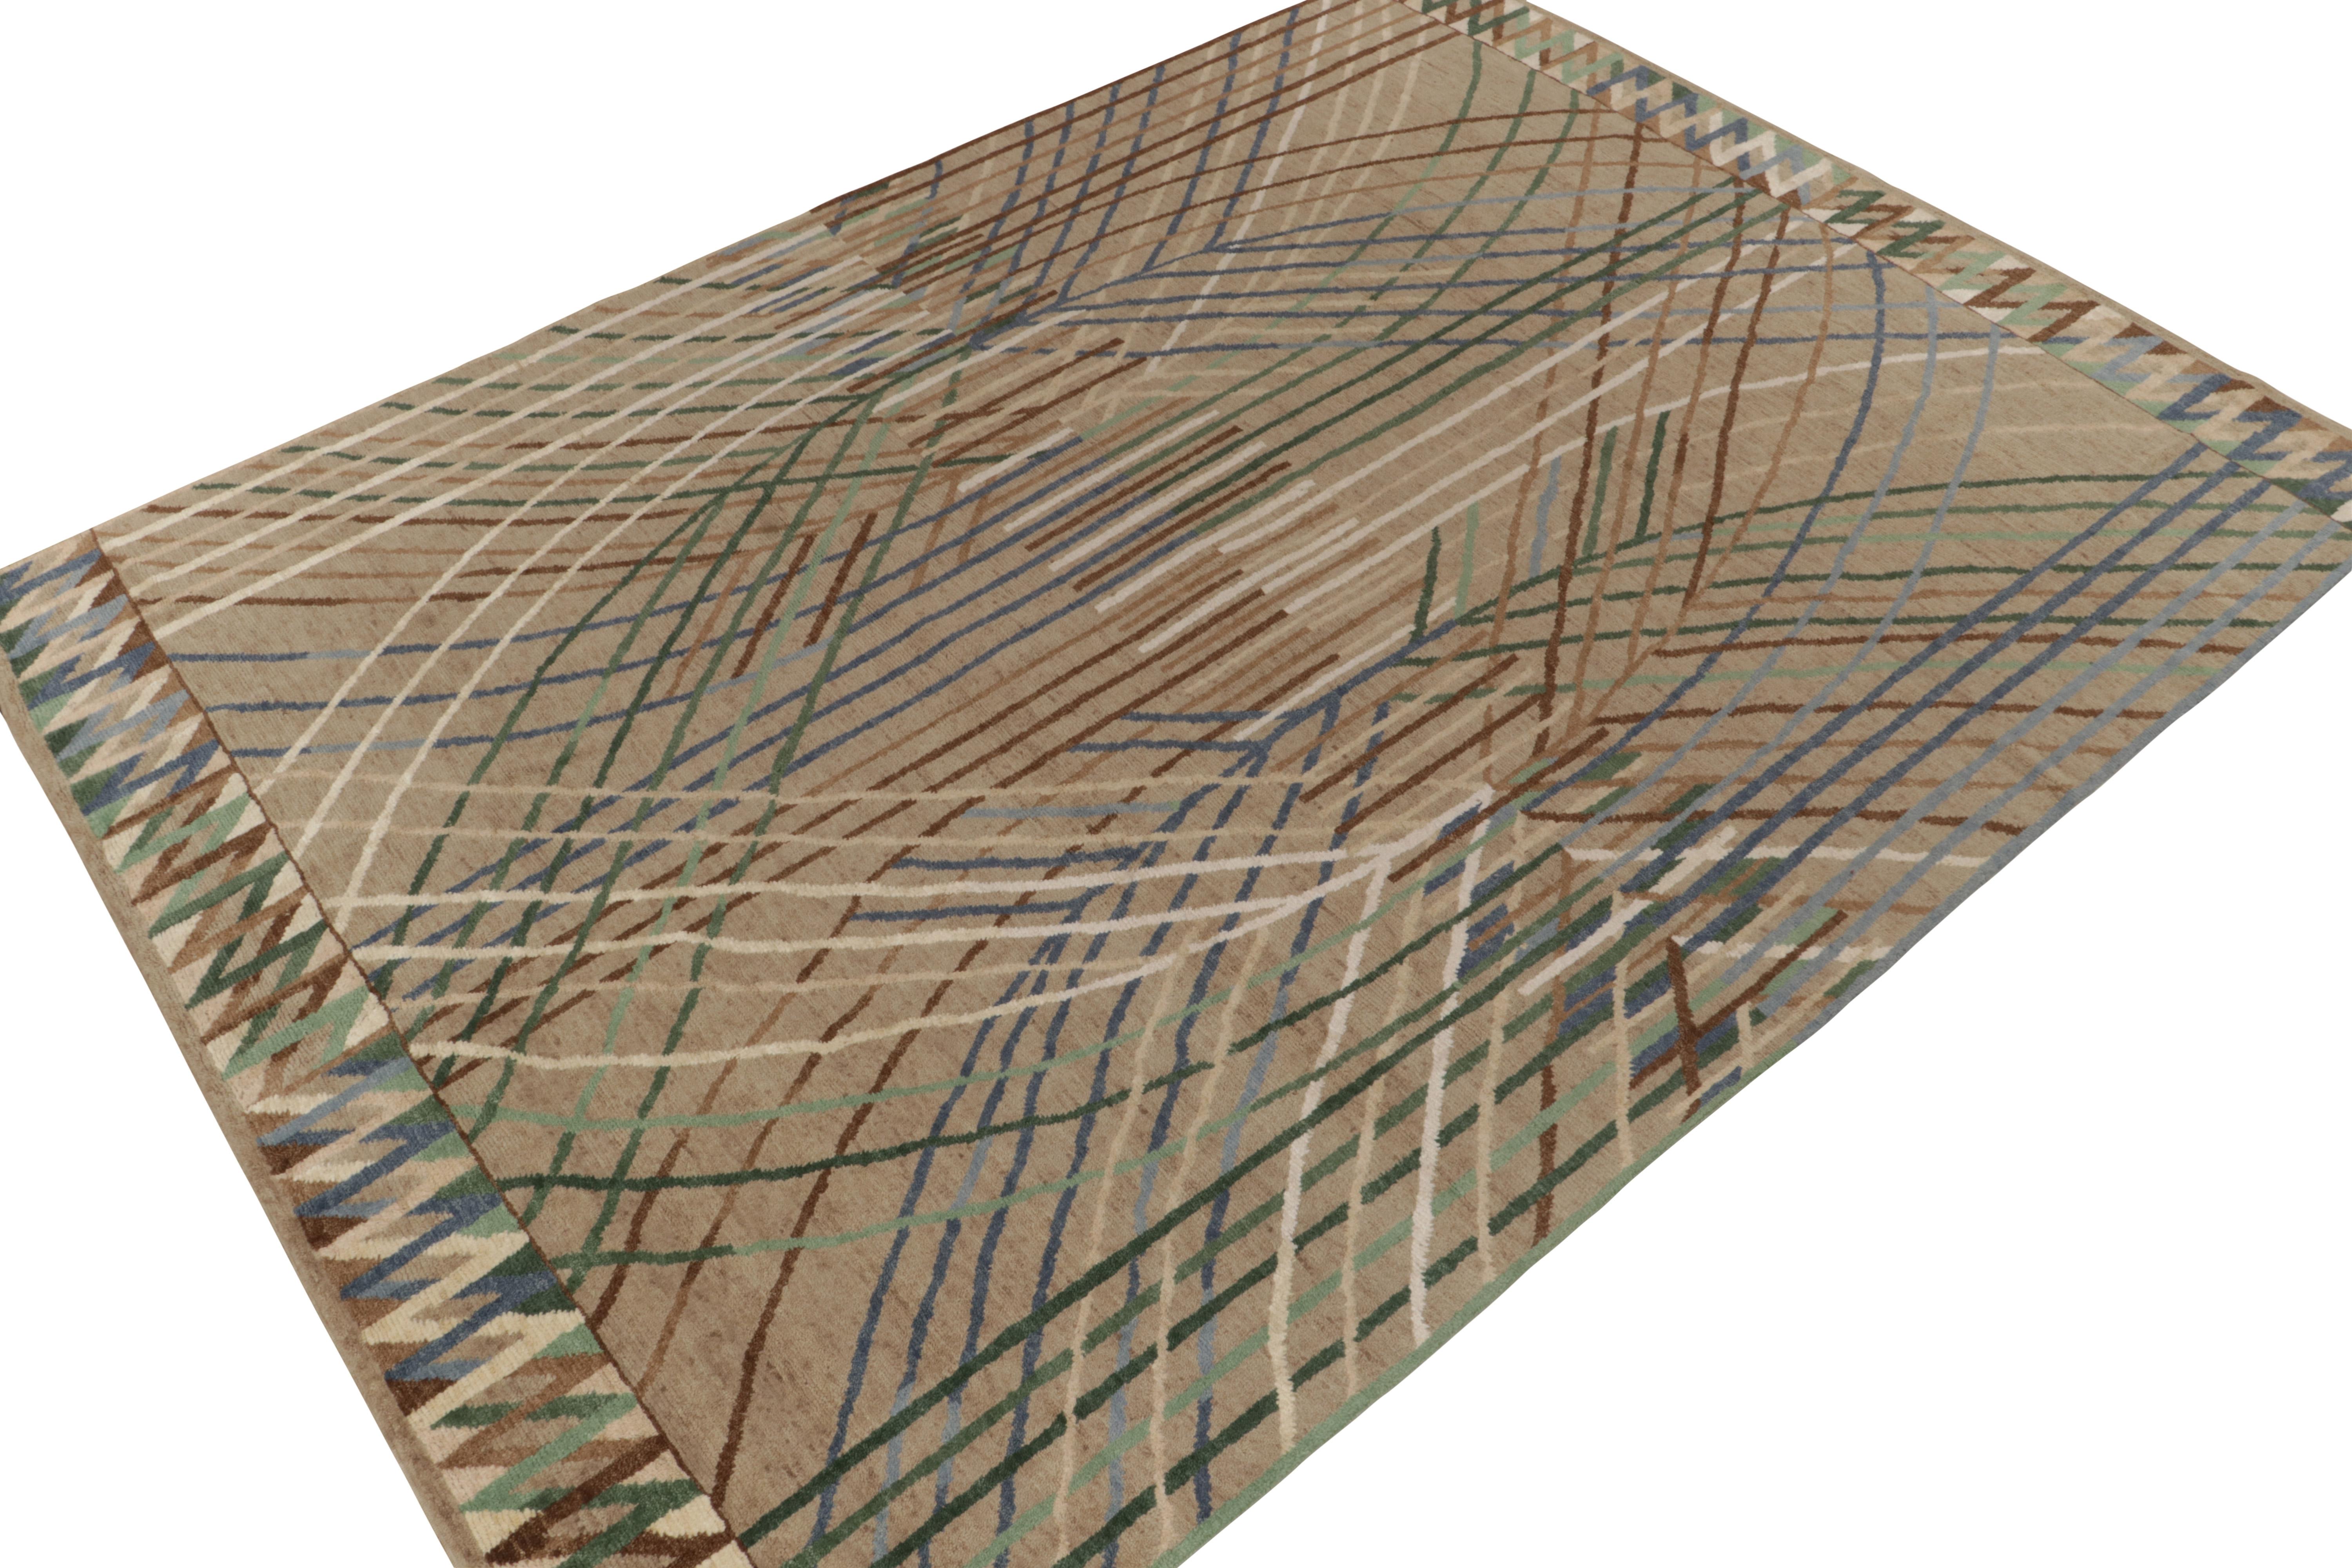 Handgeknüpfter Teppich aus einer Mischung aus Wolle, Hanf und Jute im Format 10x14, inspiriert von schwedischen Deco-Designs aus der Mitte des letzten Jahrhunderts. 

Über das Design: Dieser Teppich nimmt die Finesse der skandinavischen Ästhetik mit